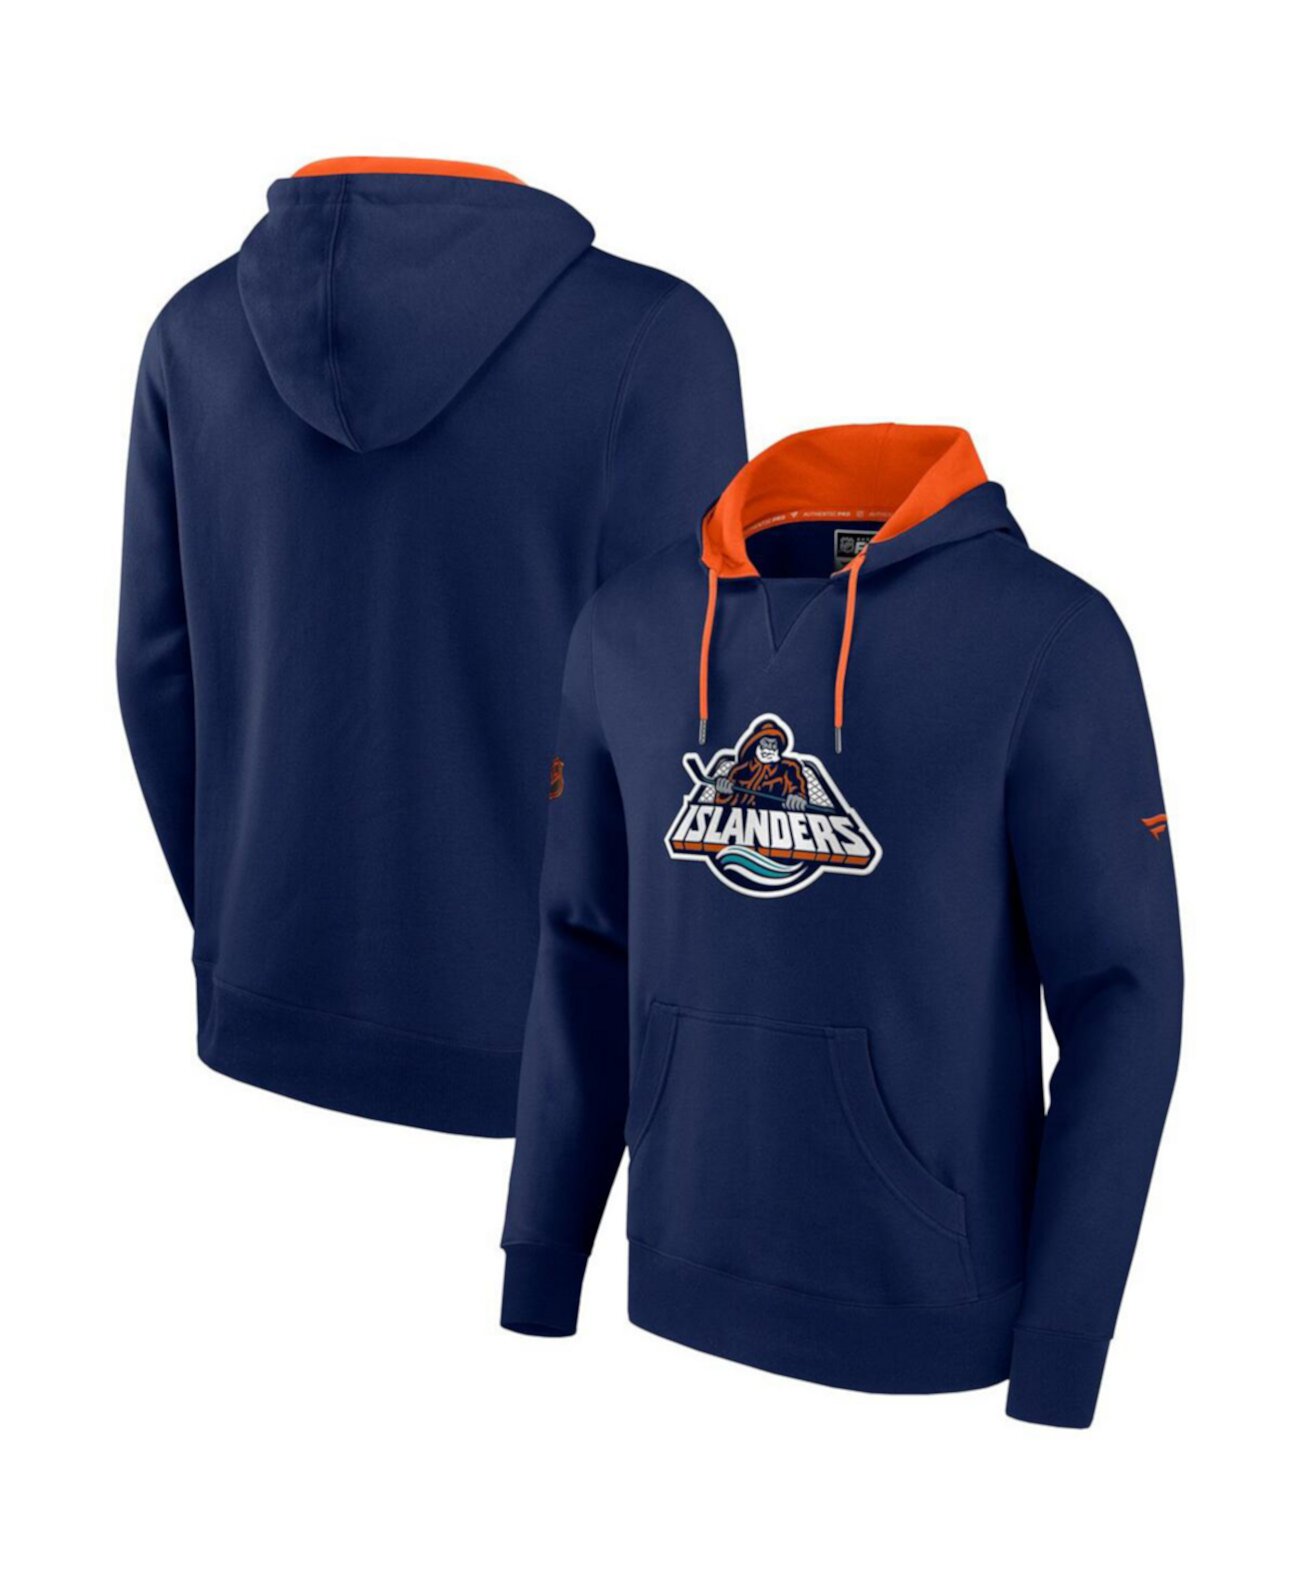 Мужской темно-синий оранжевый пуловер с капюшоном с логотипом команды New York Islanders Special Edition 2.0 Fanatics